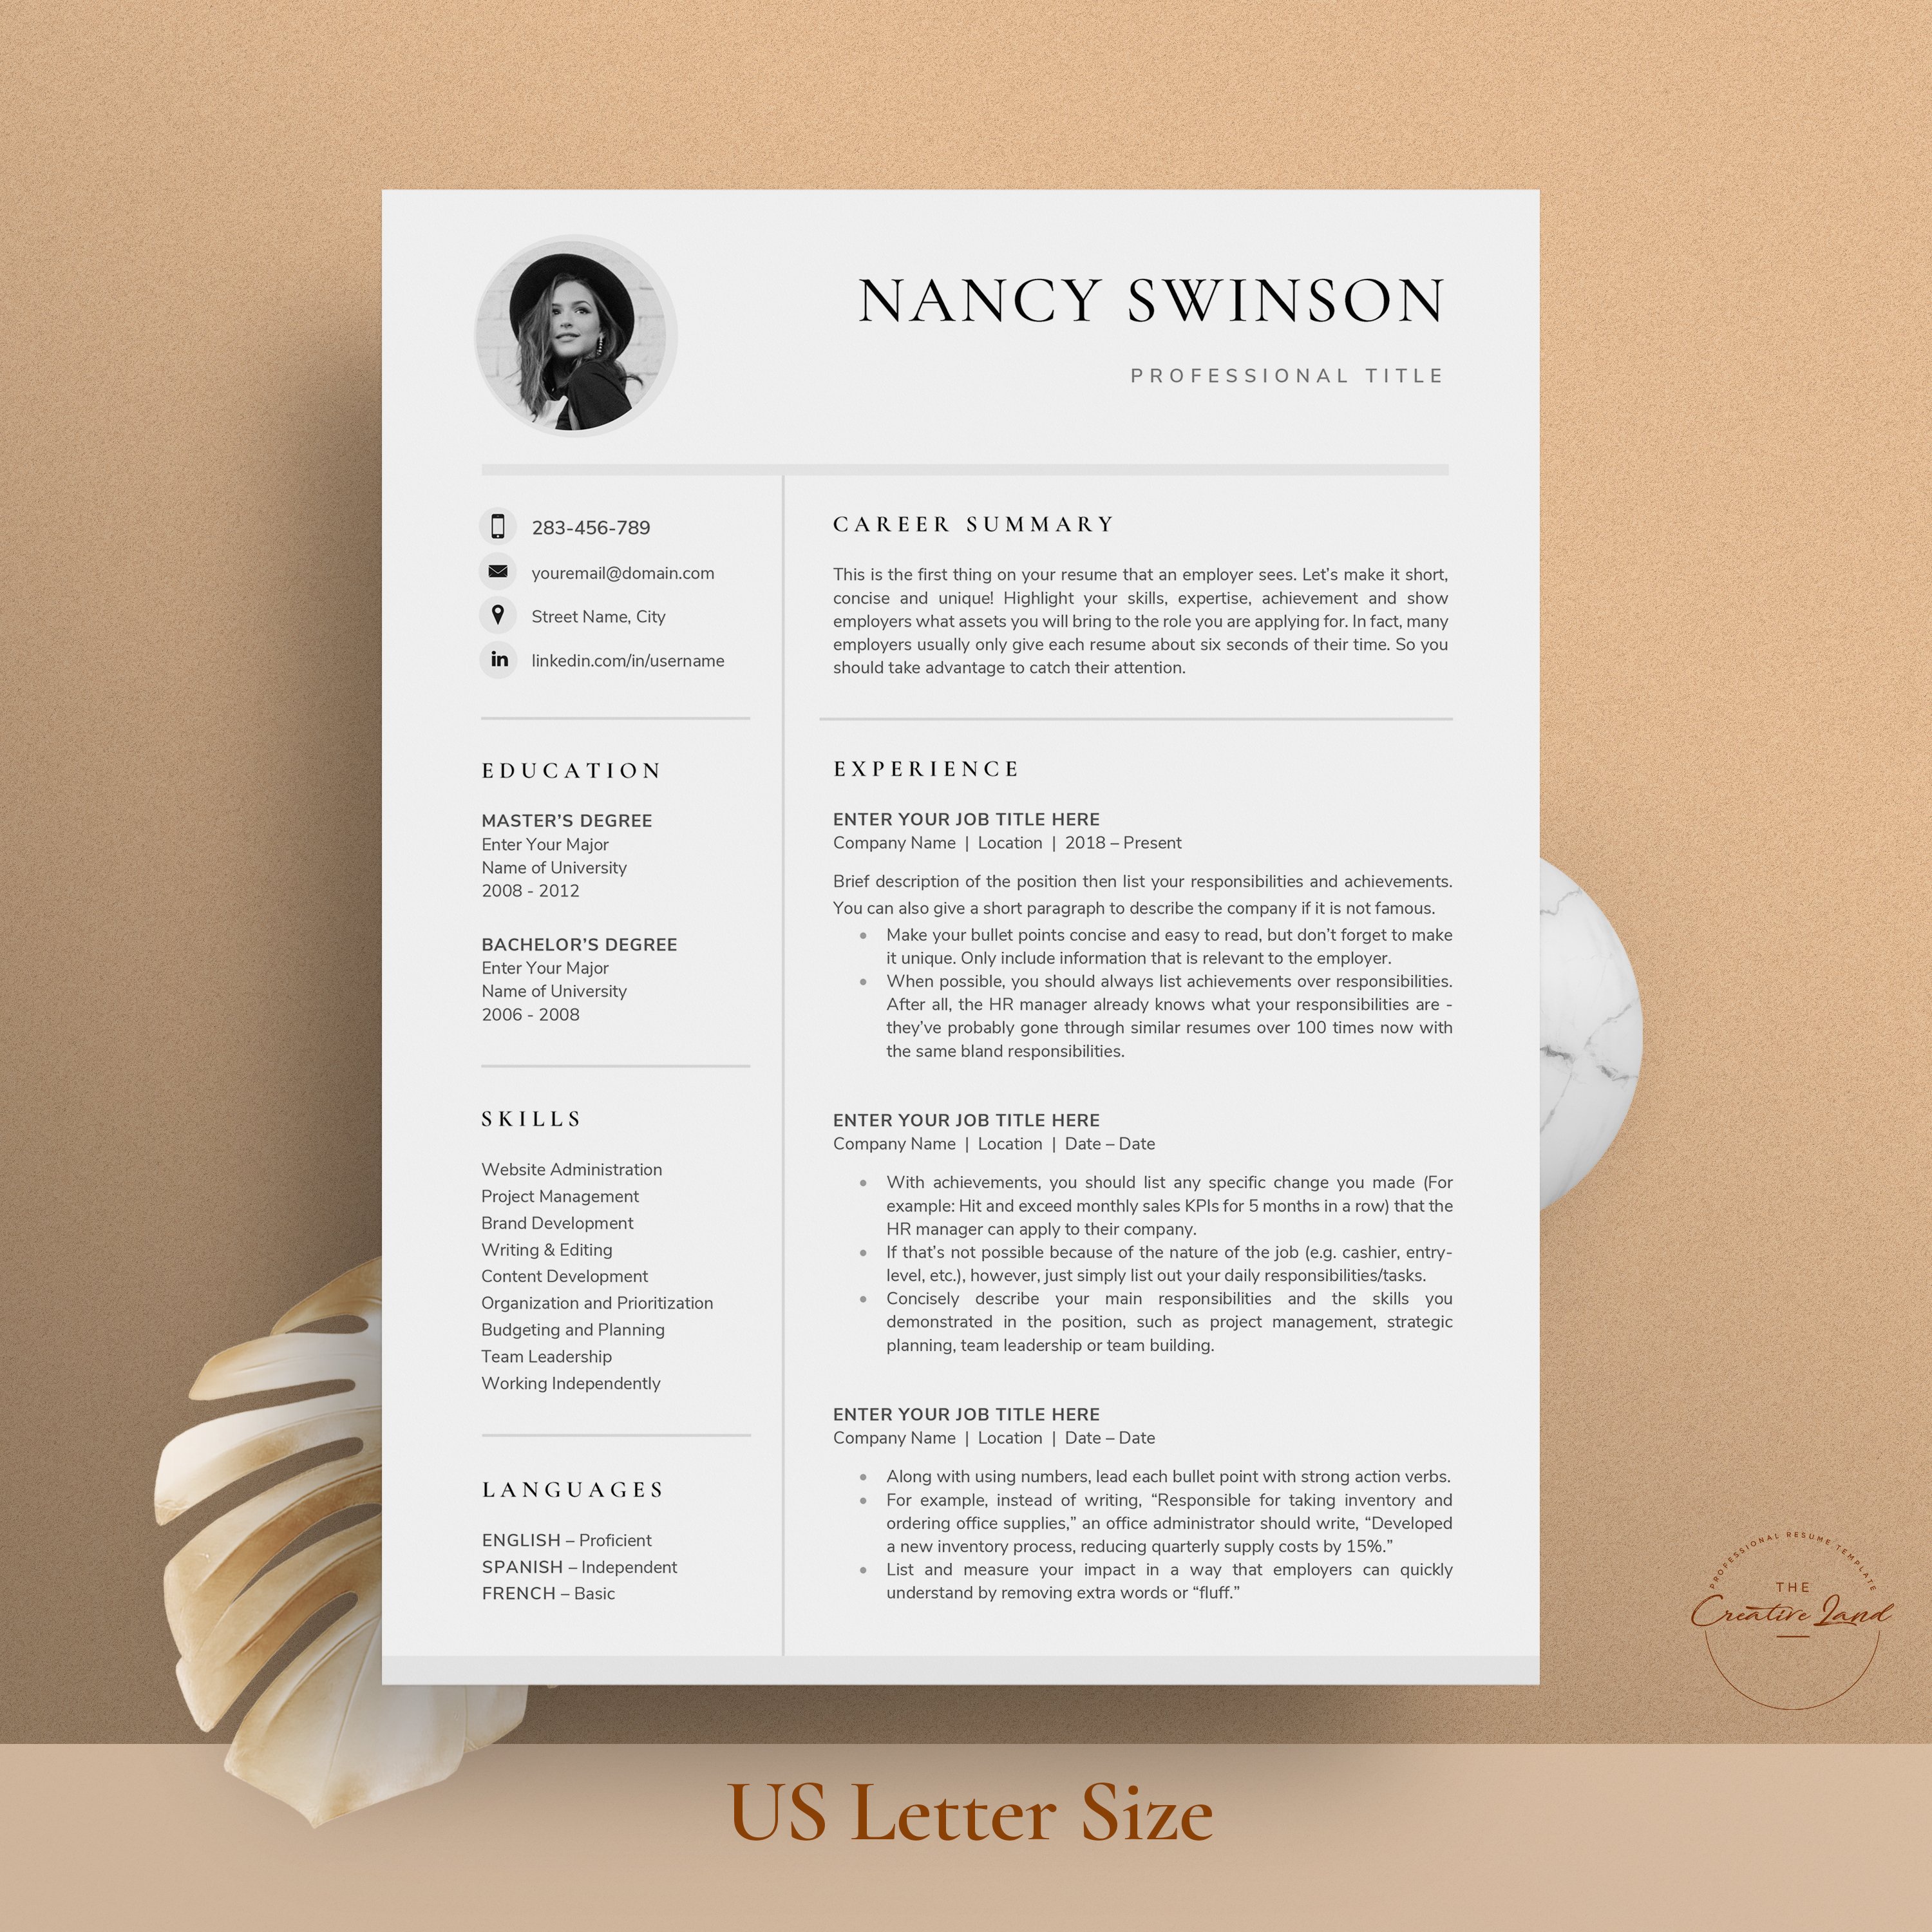 Resume/CV - The Nancy preview image.